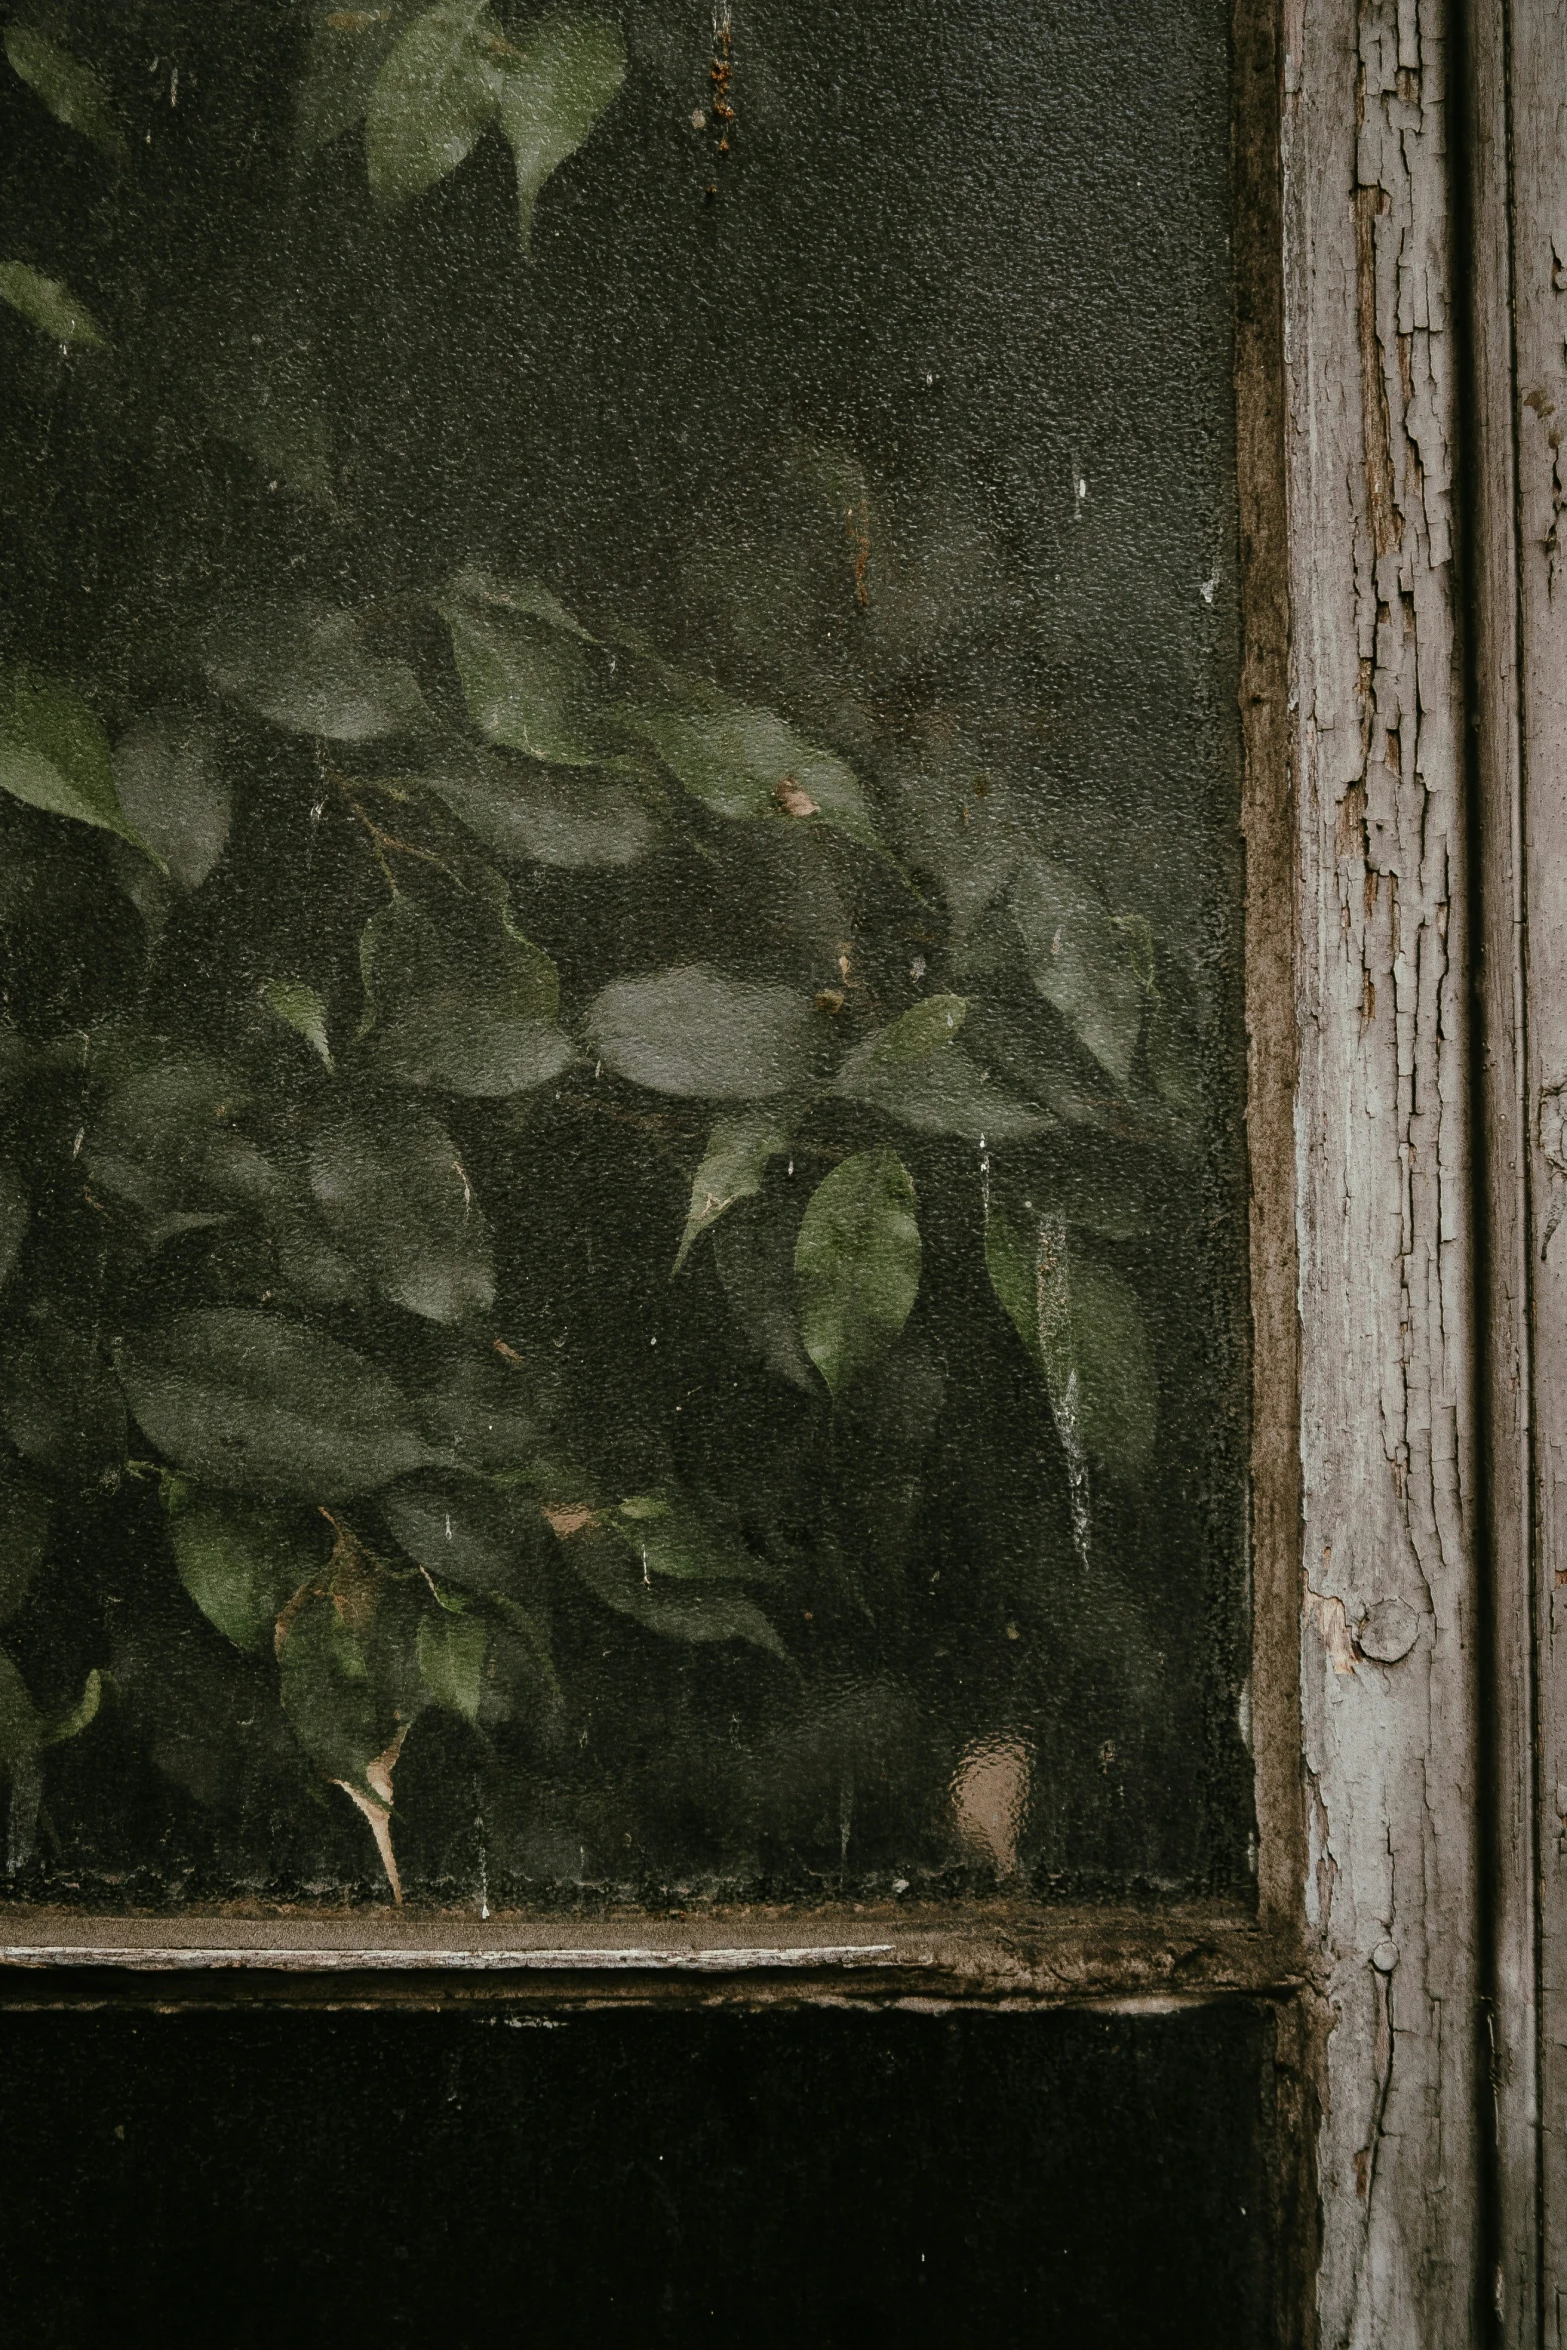 an old window has green plants growing inside